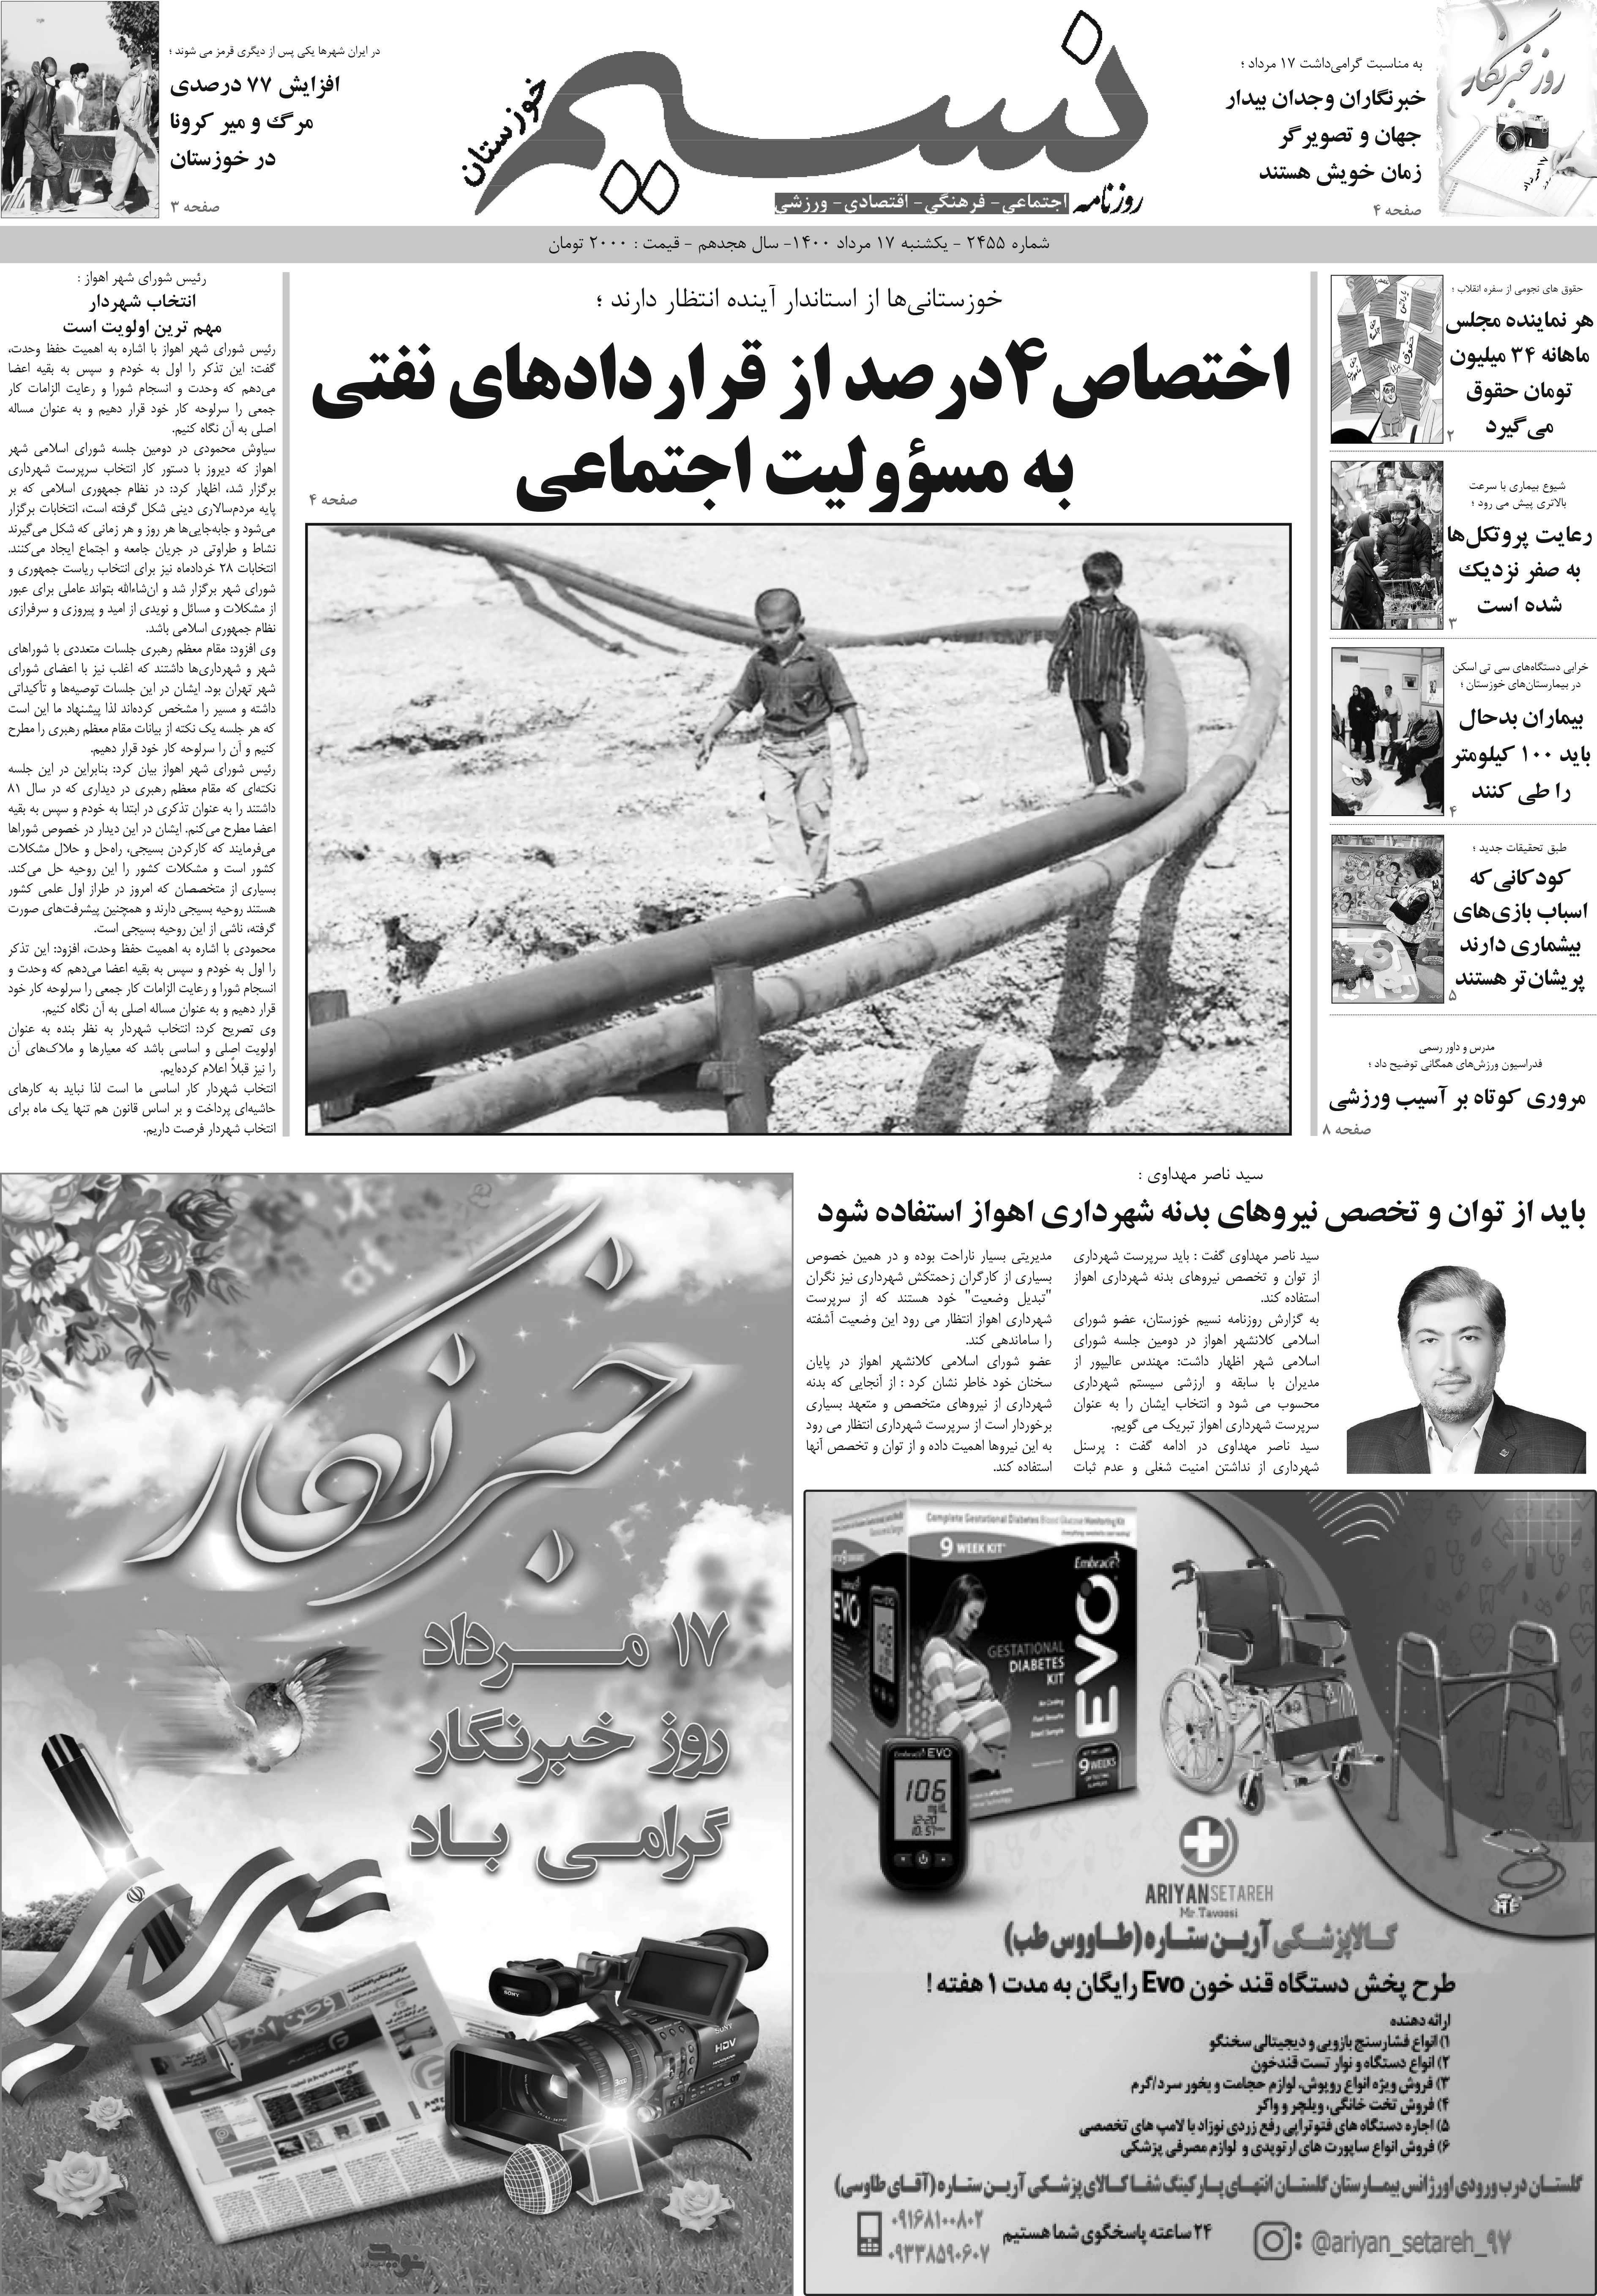 صفحه اصلی روزنامه نسیم شماره 2455 